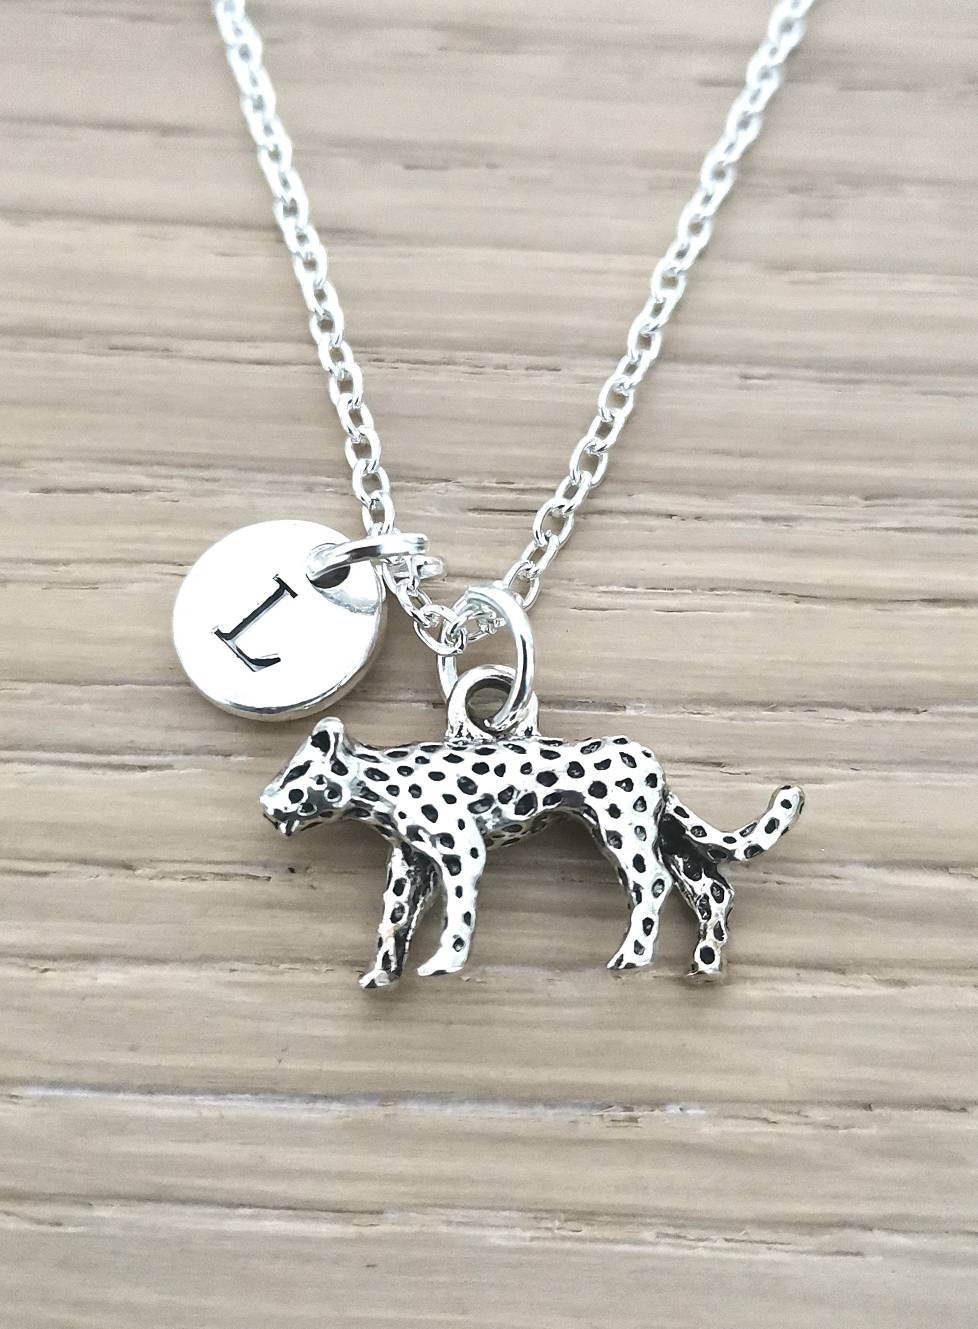 Cheetah Necklace, Cheetah Gift, Cheetah Jewelry, Cheetah Lover, Safari Gift, Safari Jewelry, Safari Necklace, Silver Necklace, Animal Lover